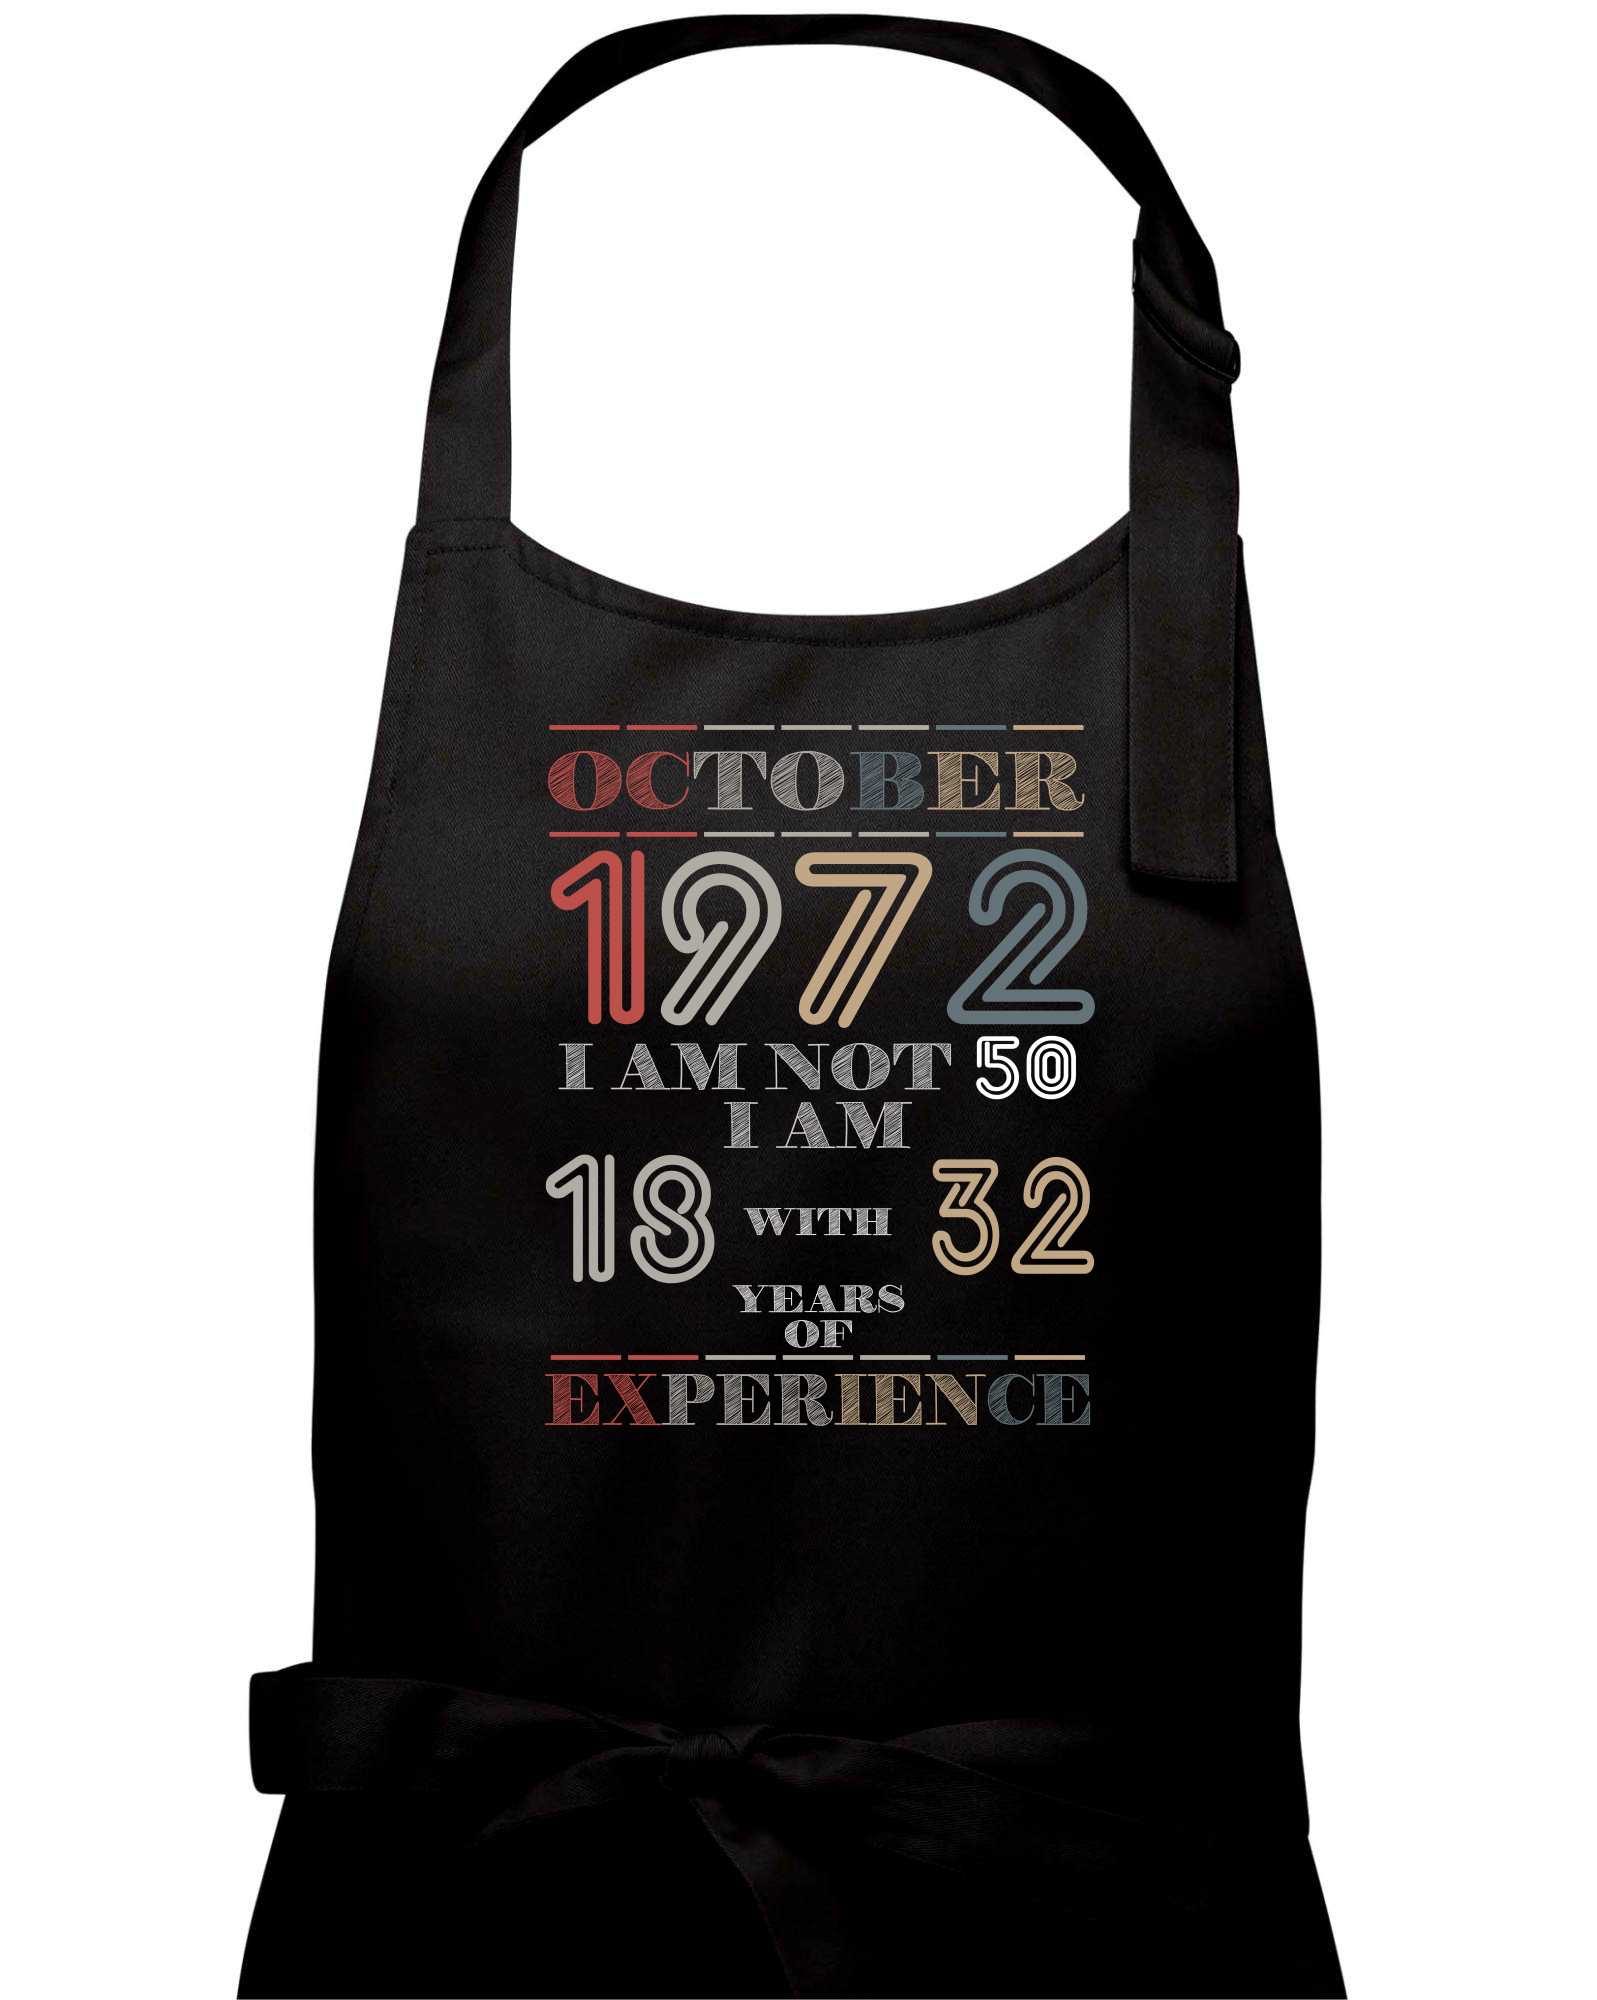 Narozeniny experience 1972 October - Zástěra na vaření